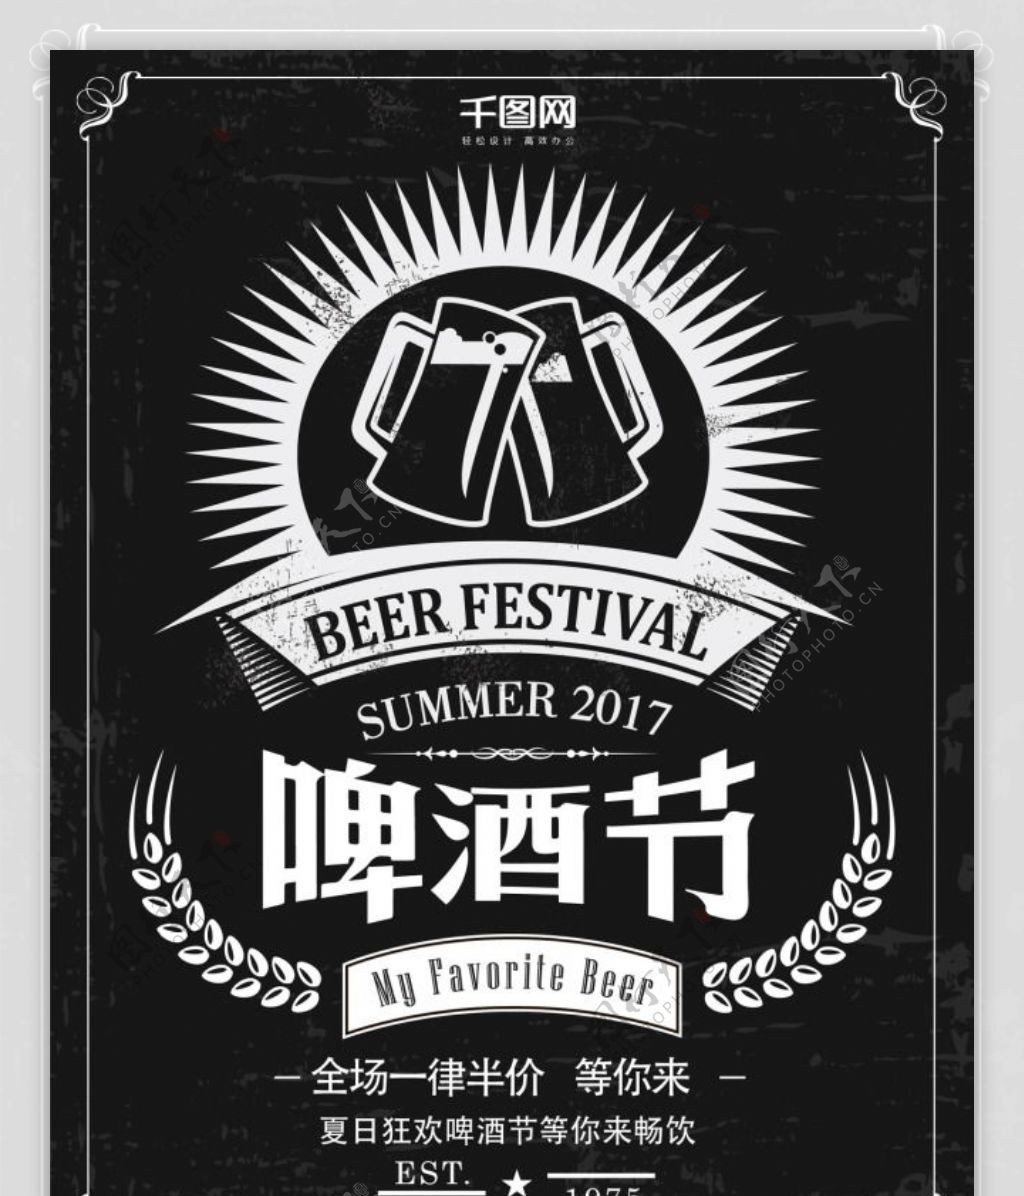 时尚复古黑白啤酒节创意简约商业海报设计